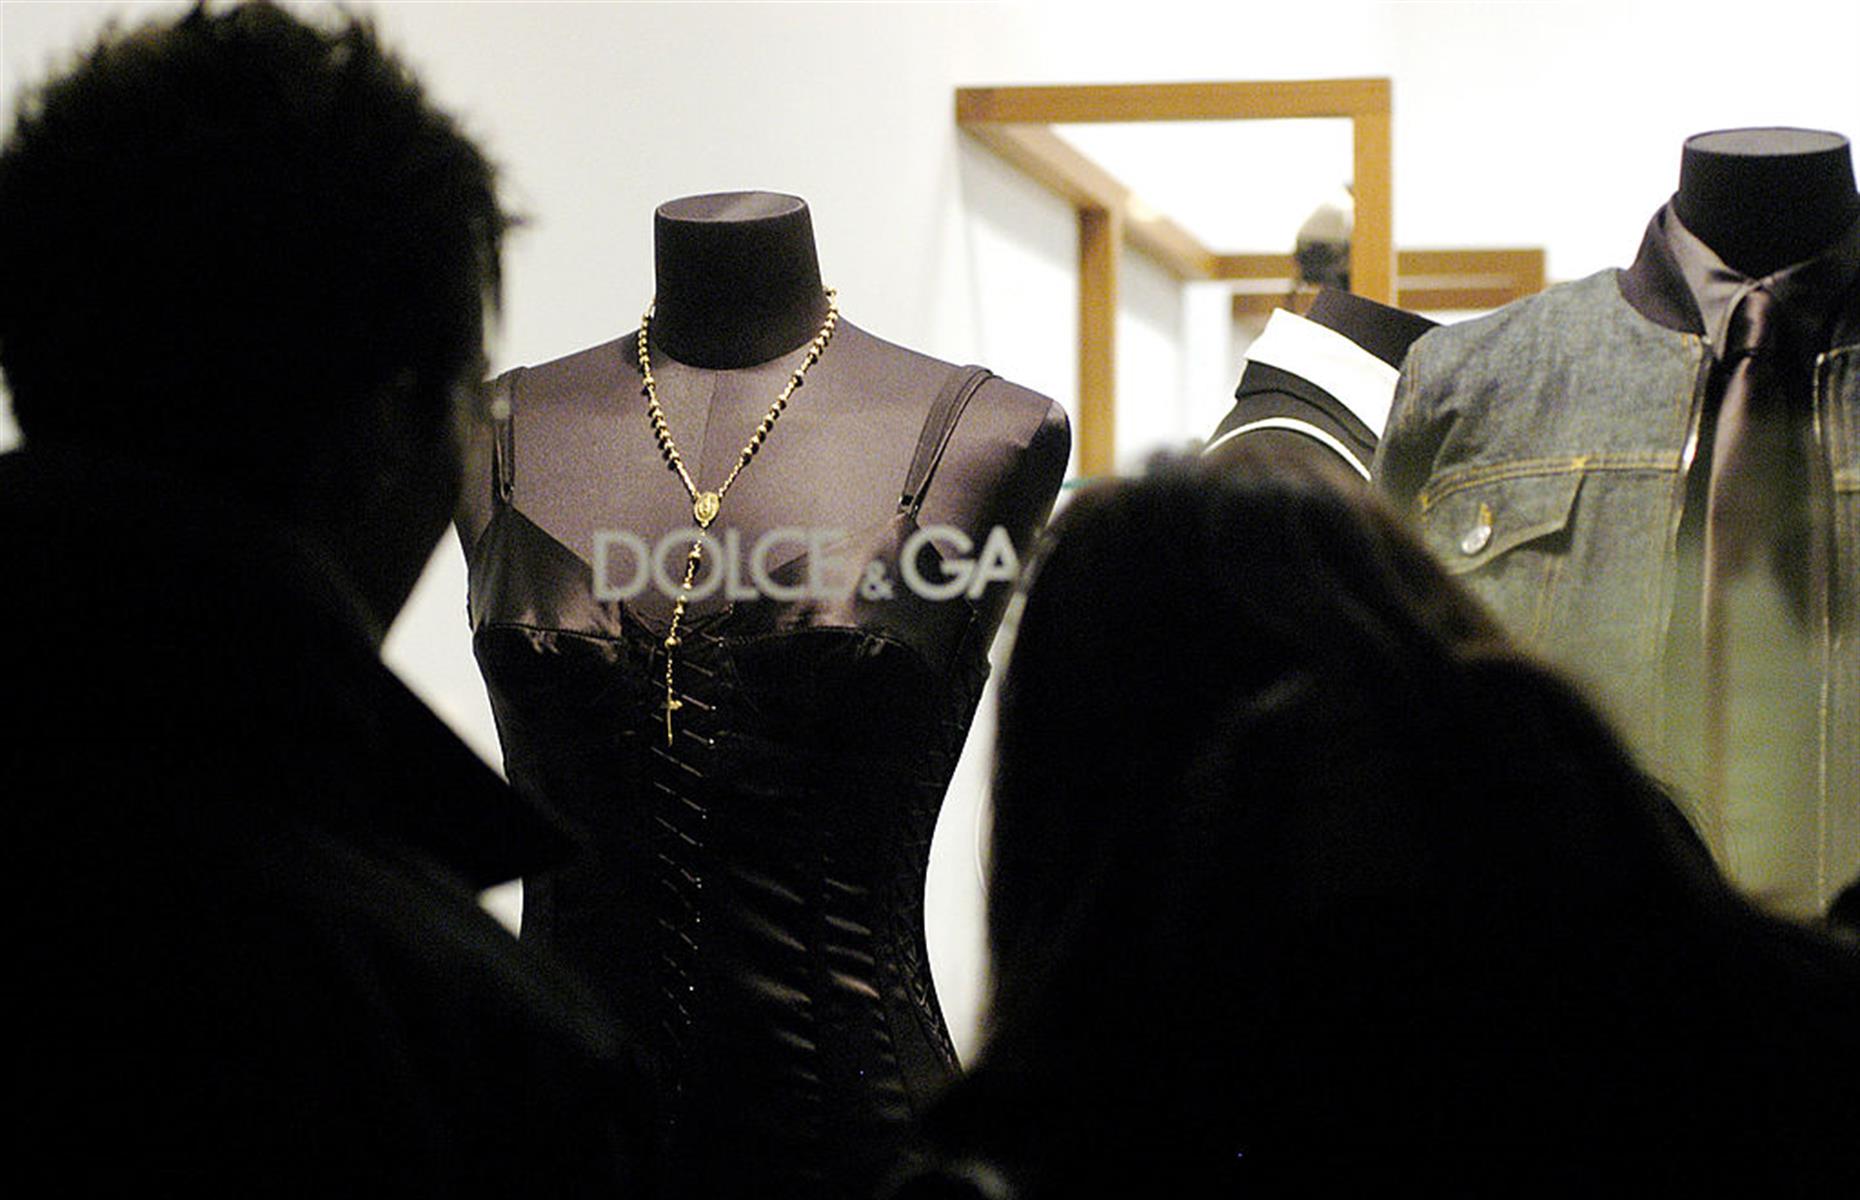 1986 – Dolce & Gabbana